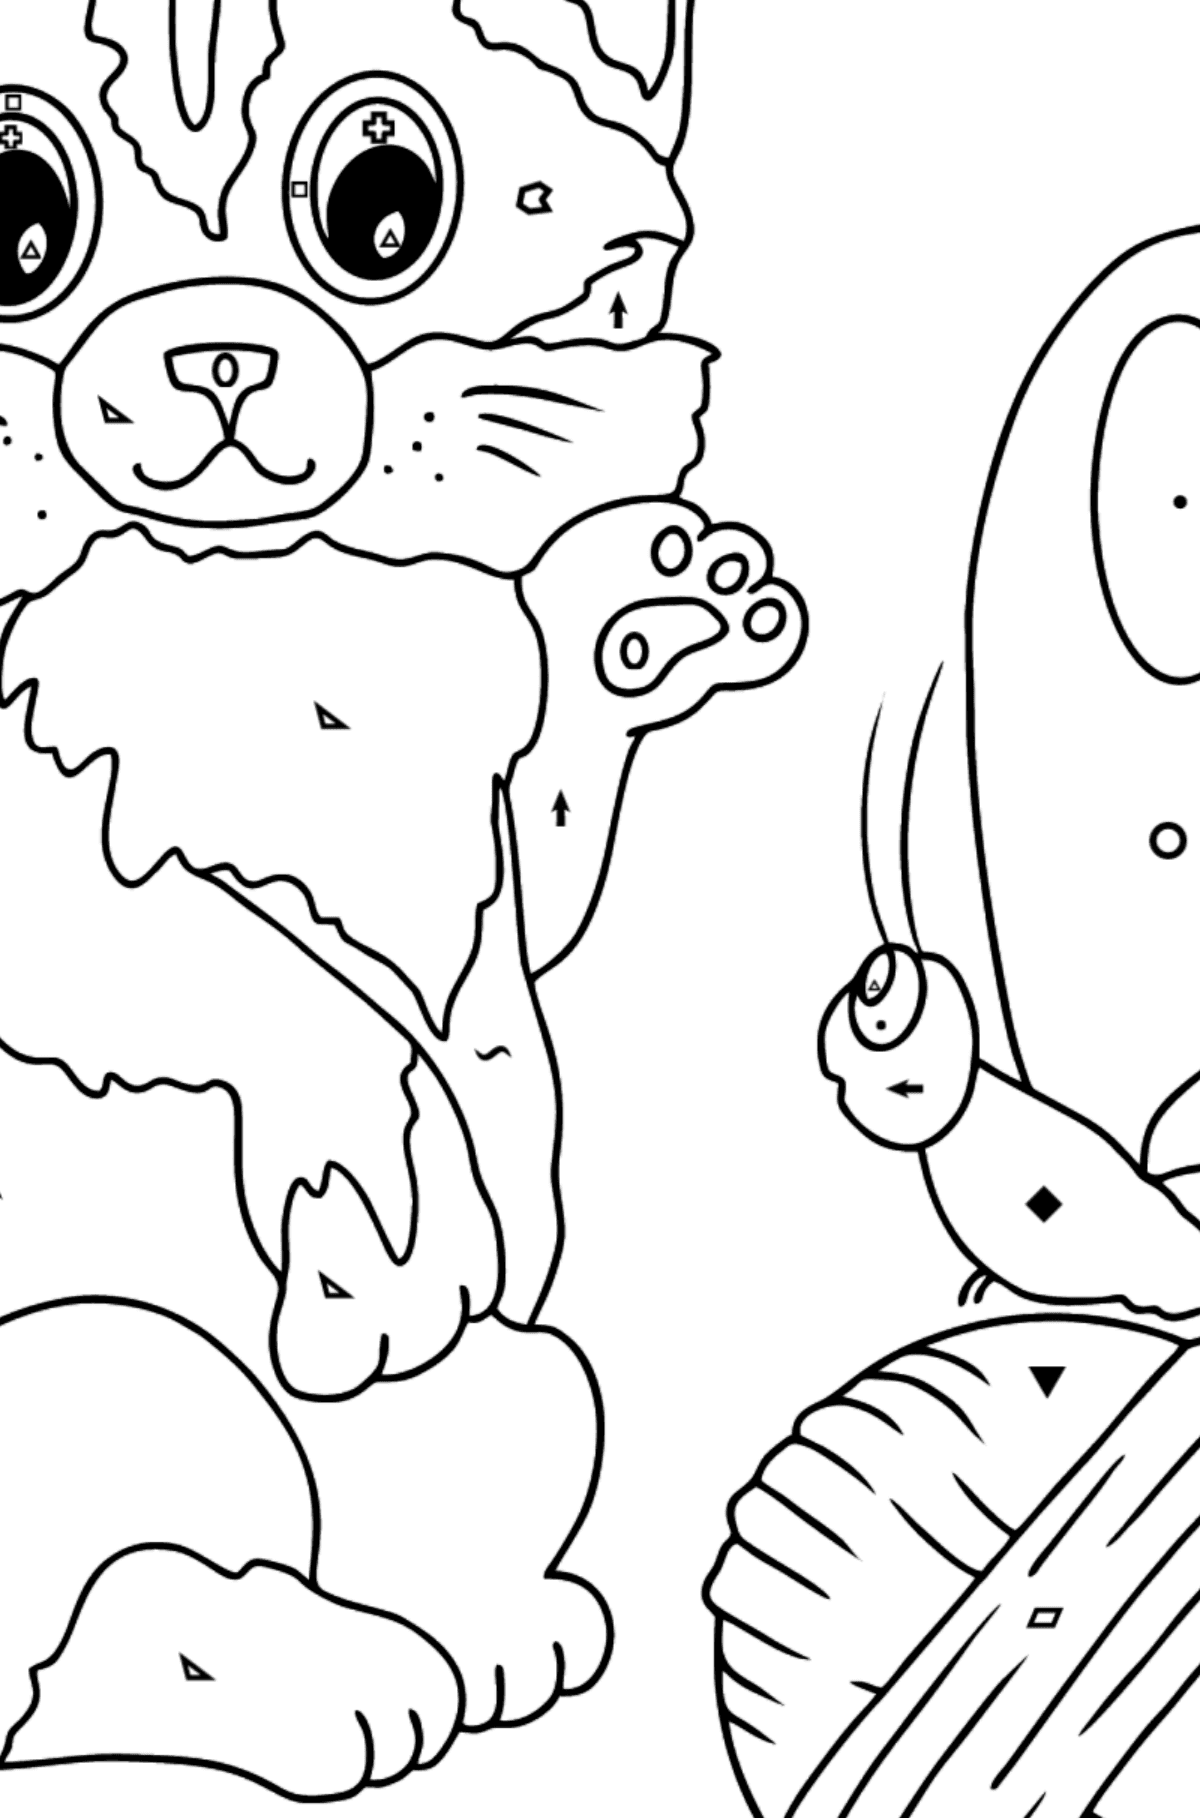 Kolorowanka Kot bawi się motylem - Kolorowanie według symboli i figur geometrycznych dla dzieci